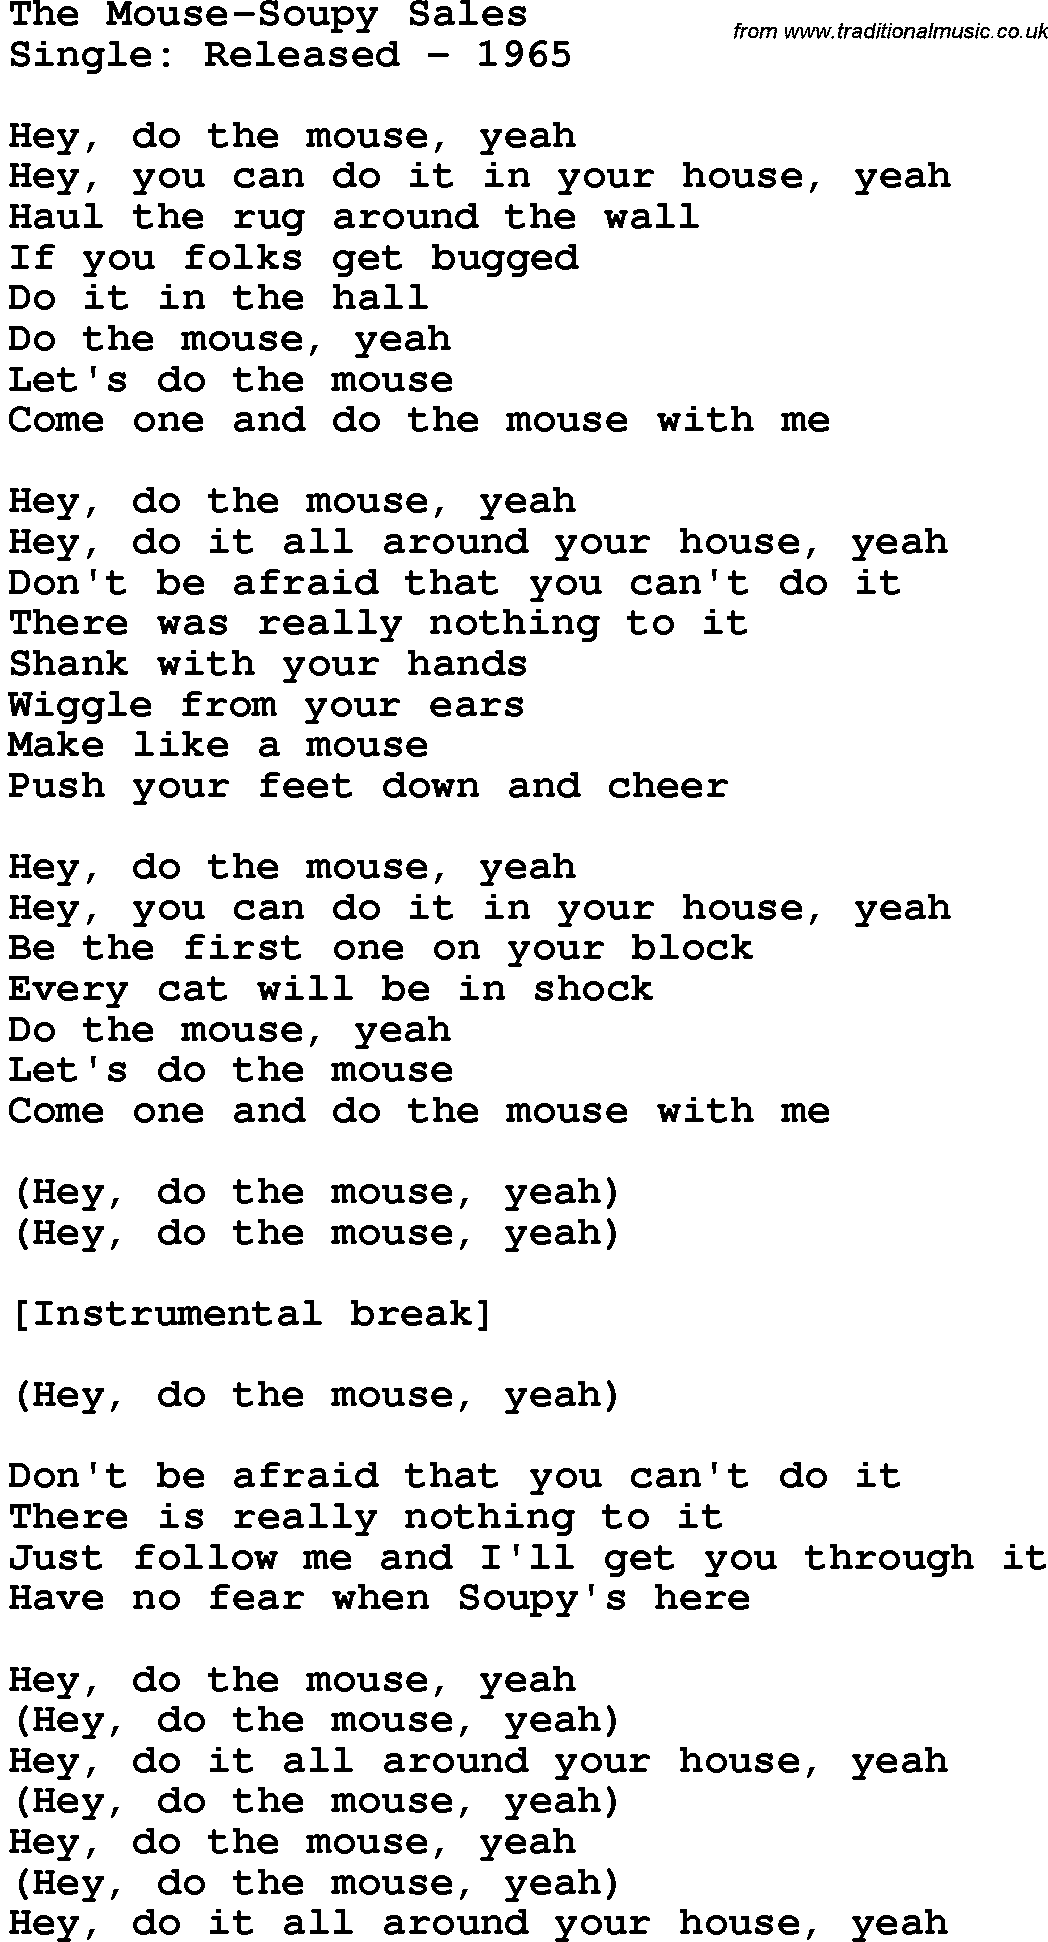 Novelty song: The Mouse-Soupy Sales lyrics